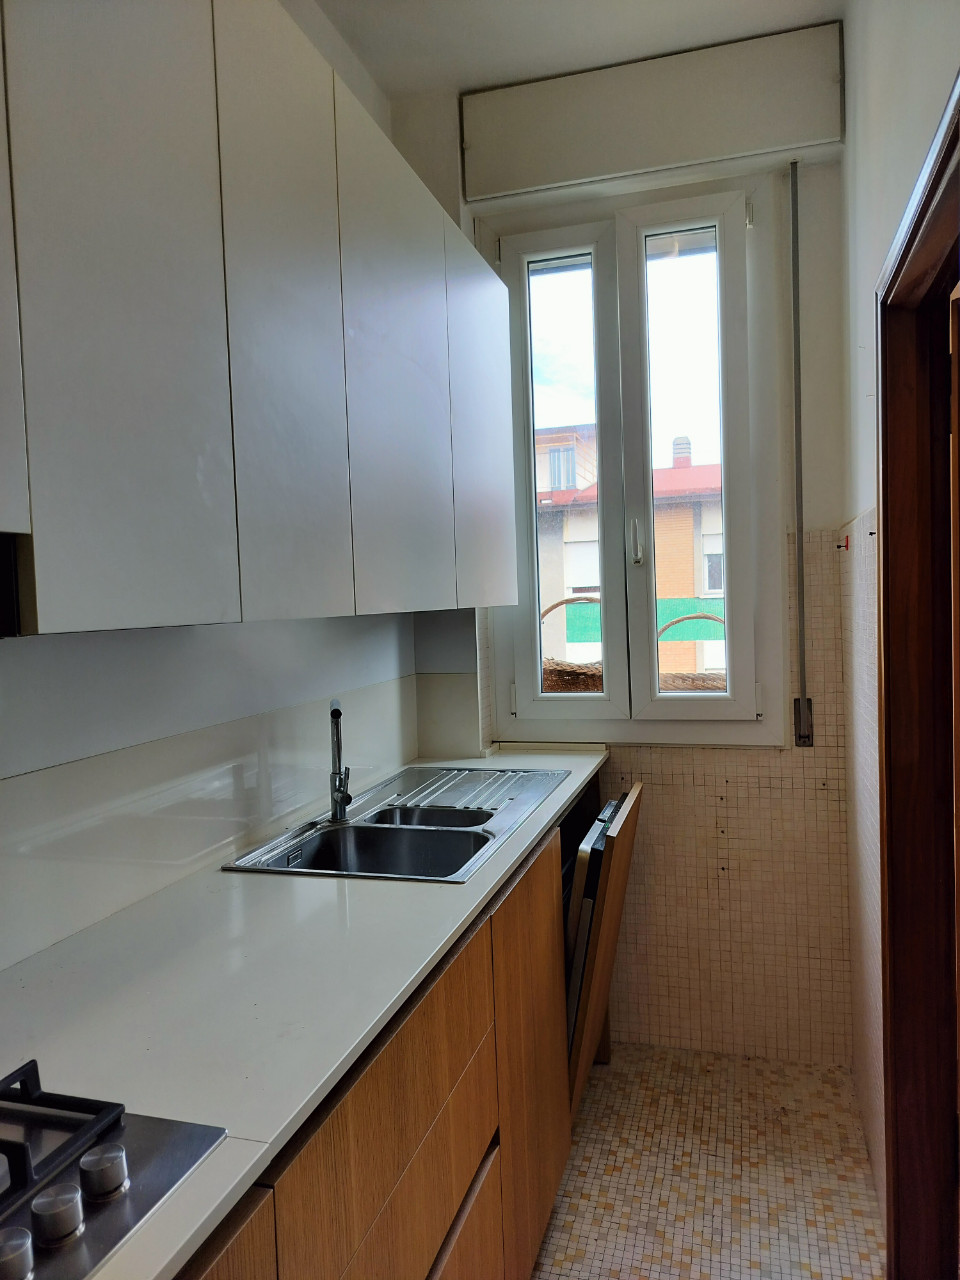 Affitto - Appartamento - Lunetta Gamberini - Bologna - € 1.700